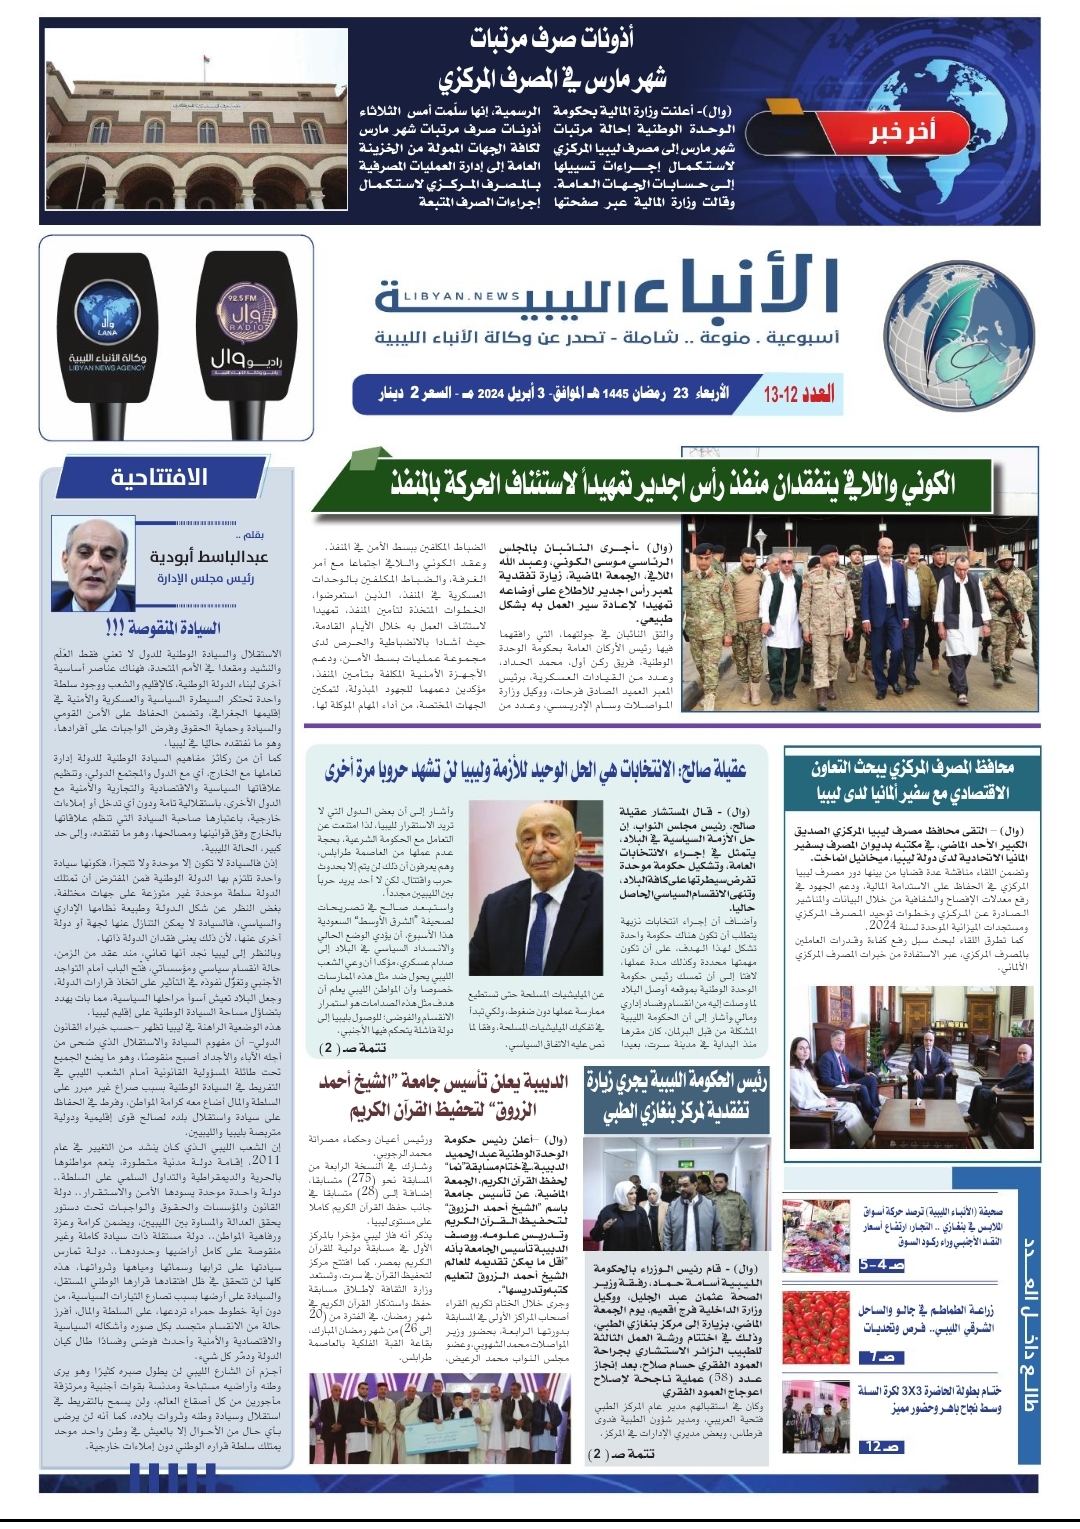 صحيفة الأنباء الليبية (العدد الثاني والثالث عشر)